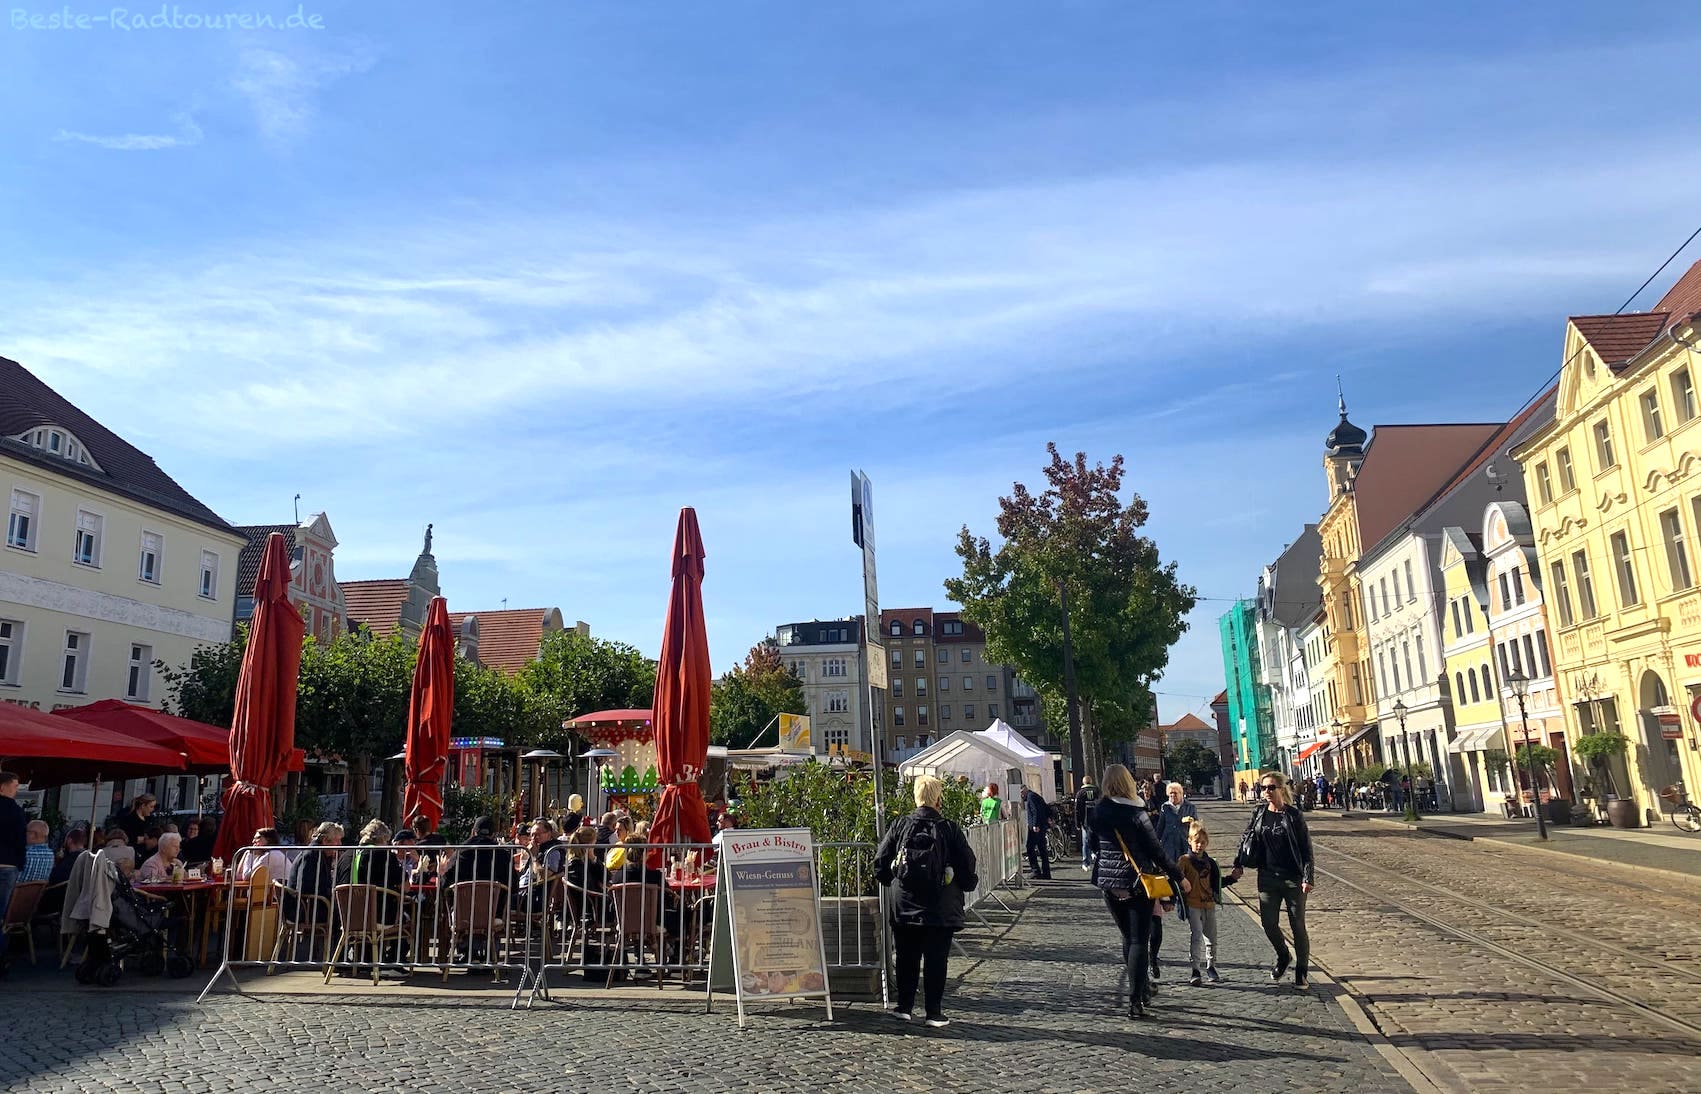 Straßenfest auf dem Altmarkt in der Altstadt von Cottbus